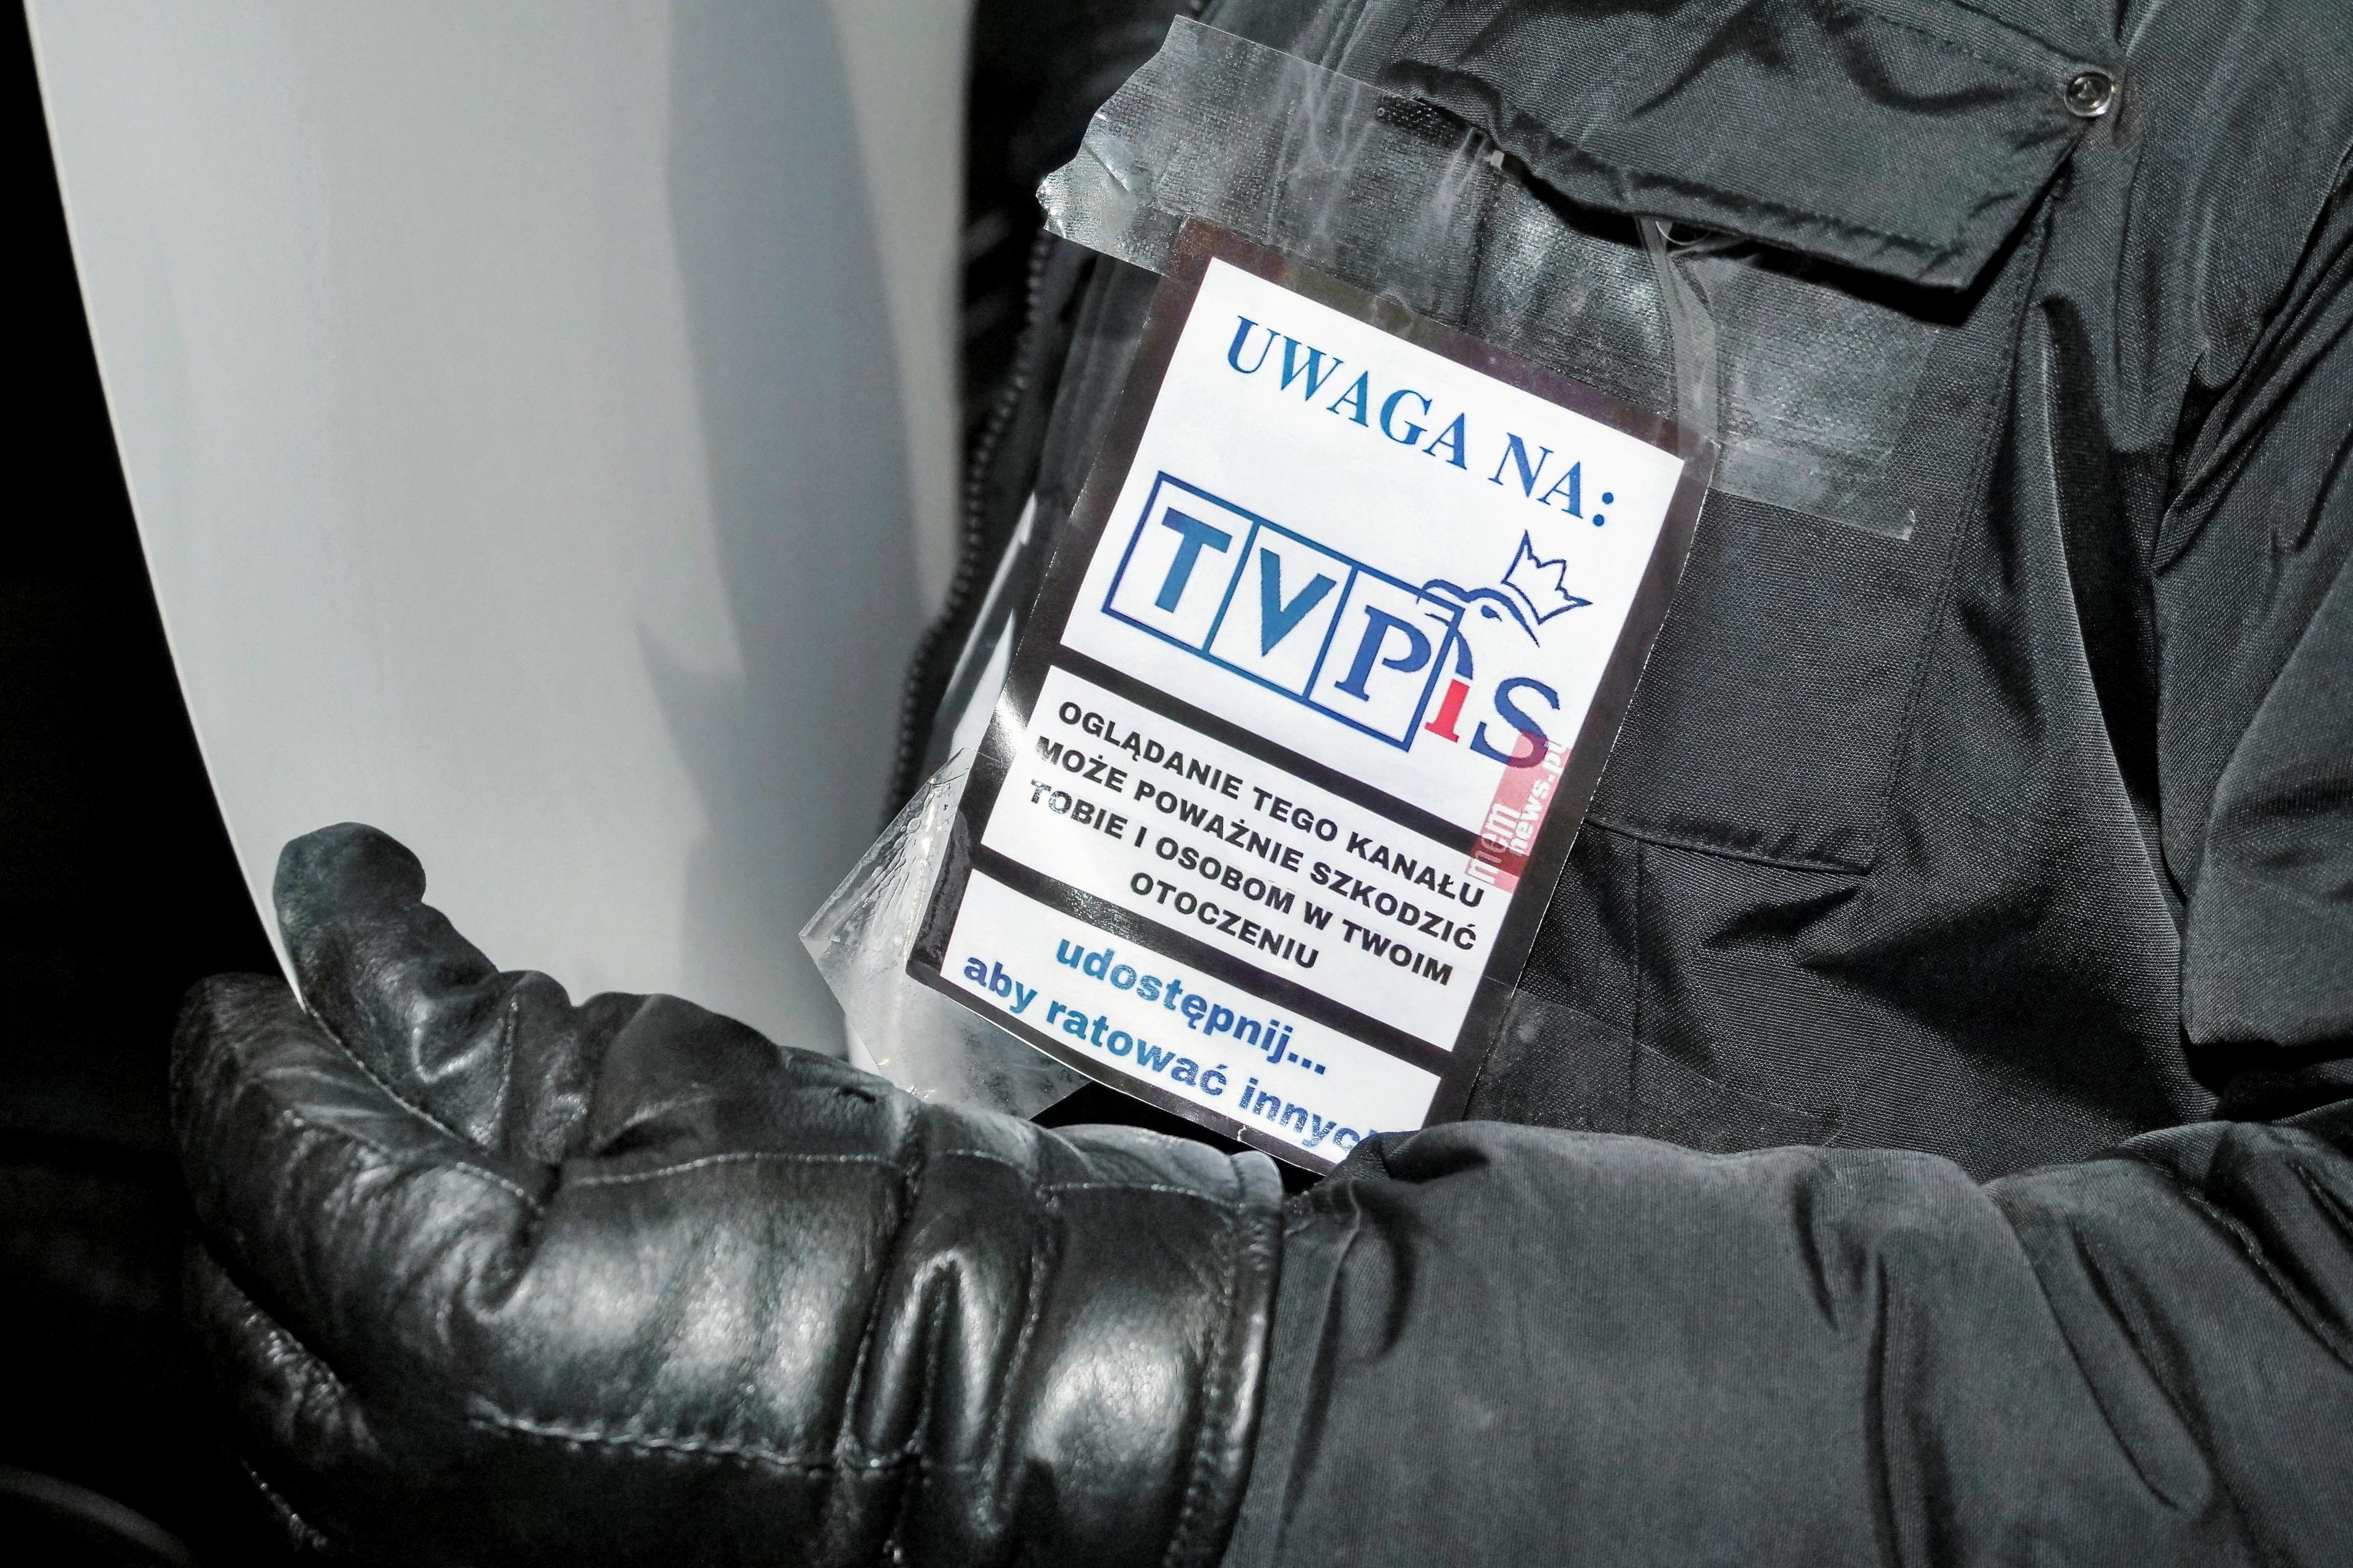 Plakietka z napisem "Uwaga na TVP" przypięta na zimowej kurtce